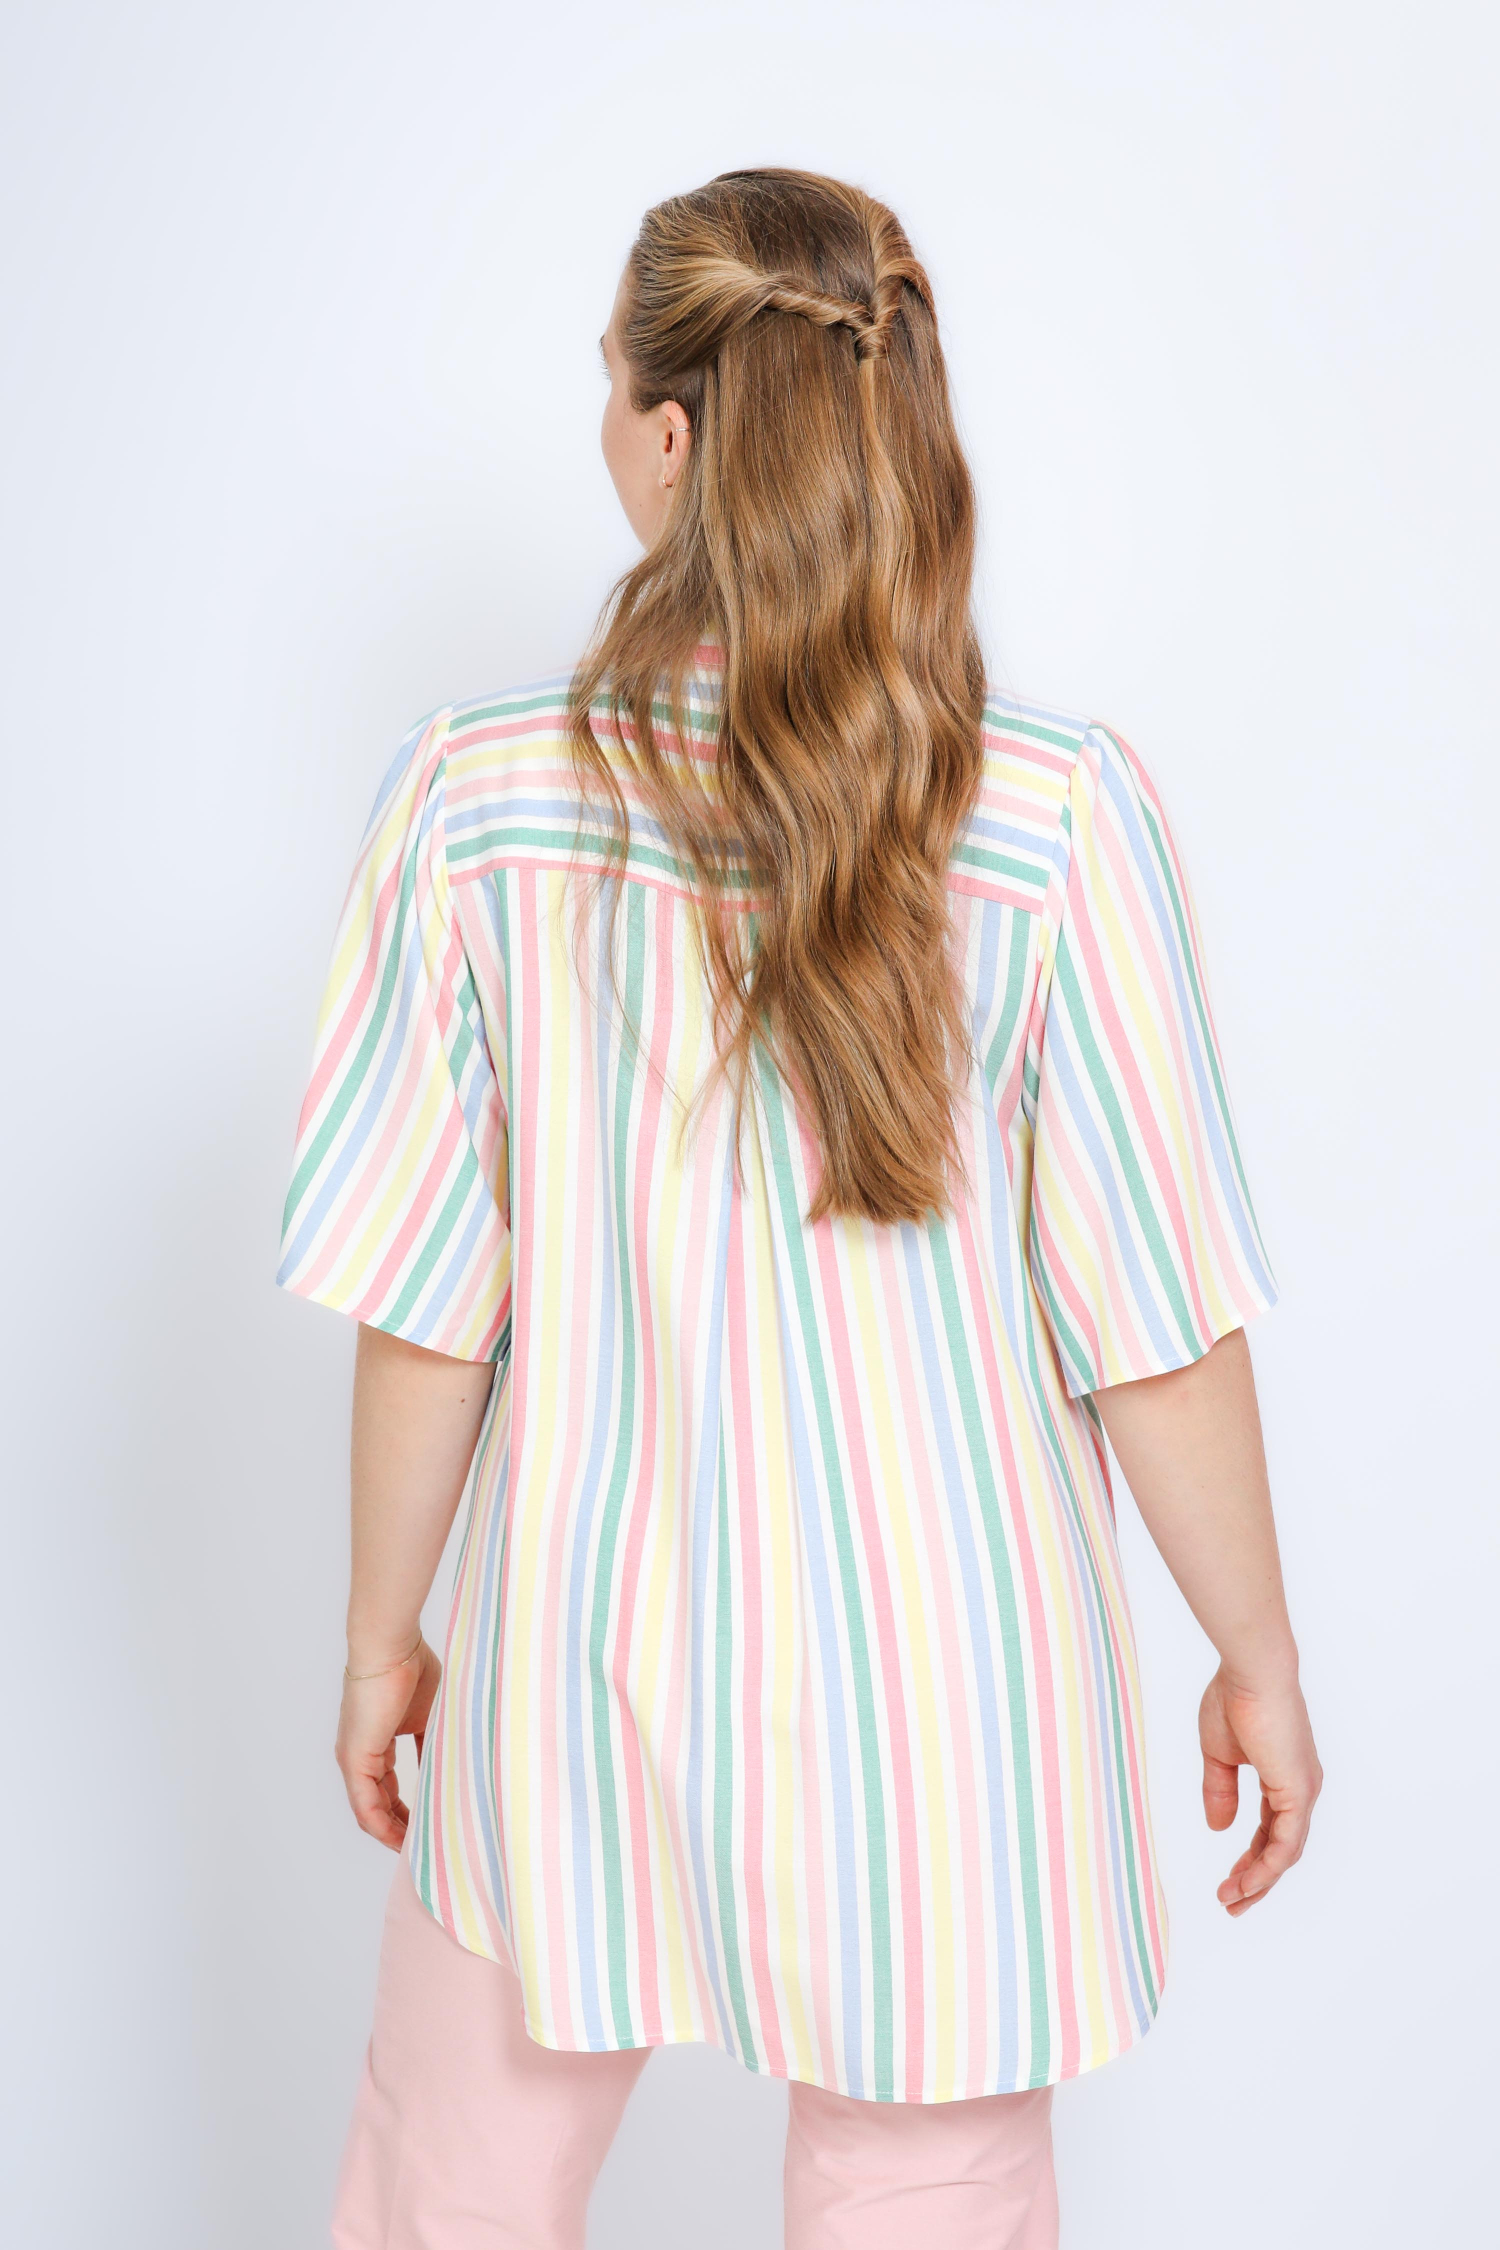 Multicolored striped shirt